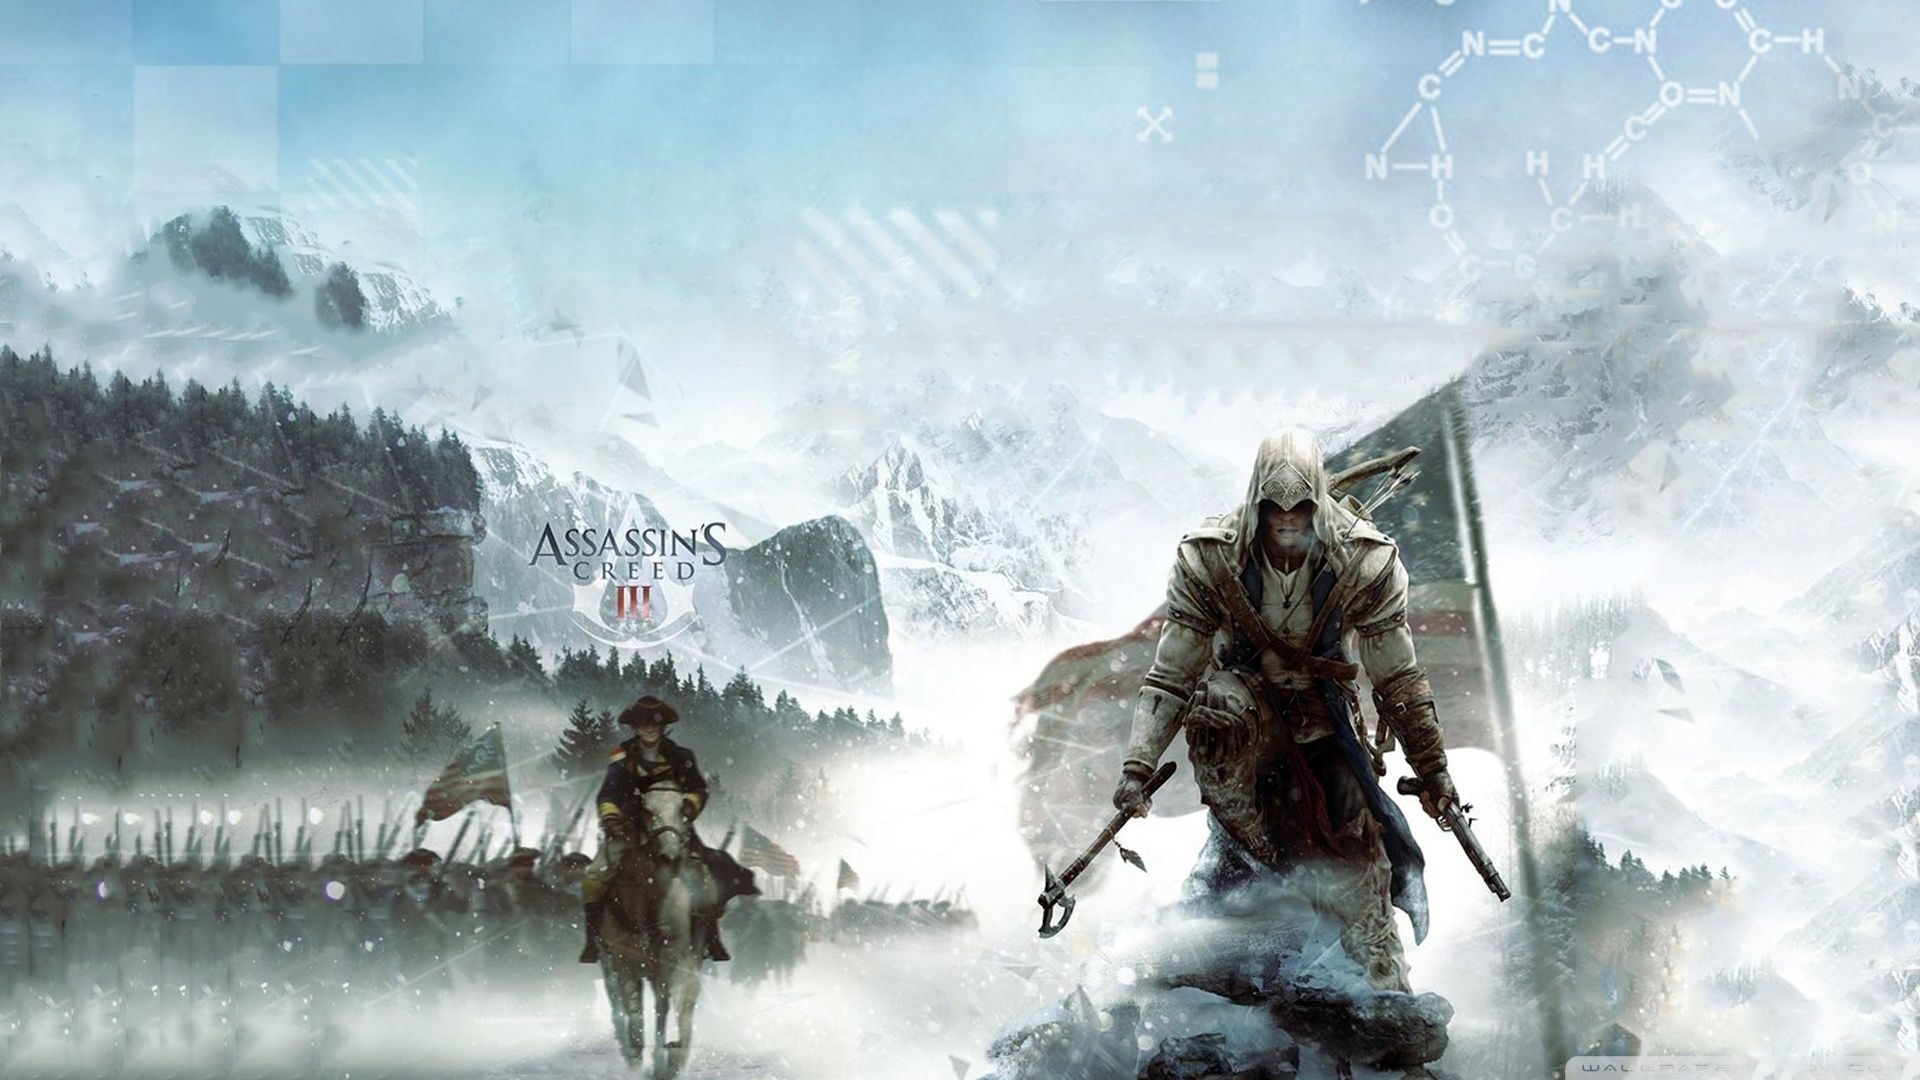 بازی Assassins Creed III